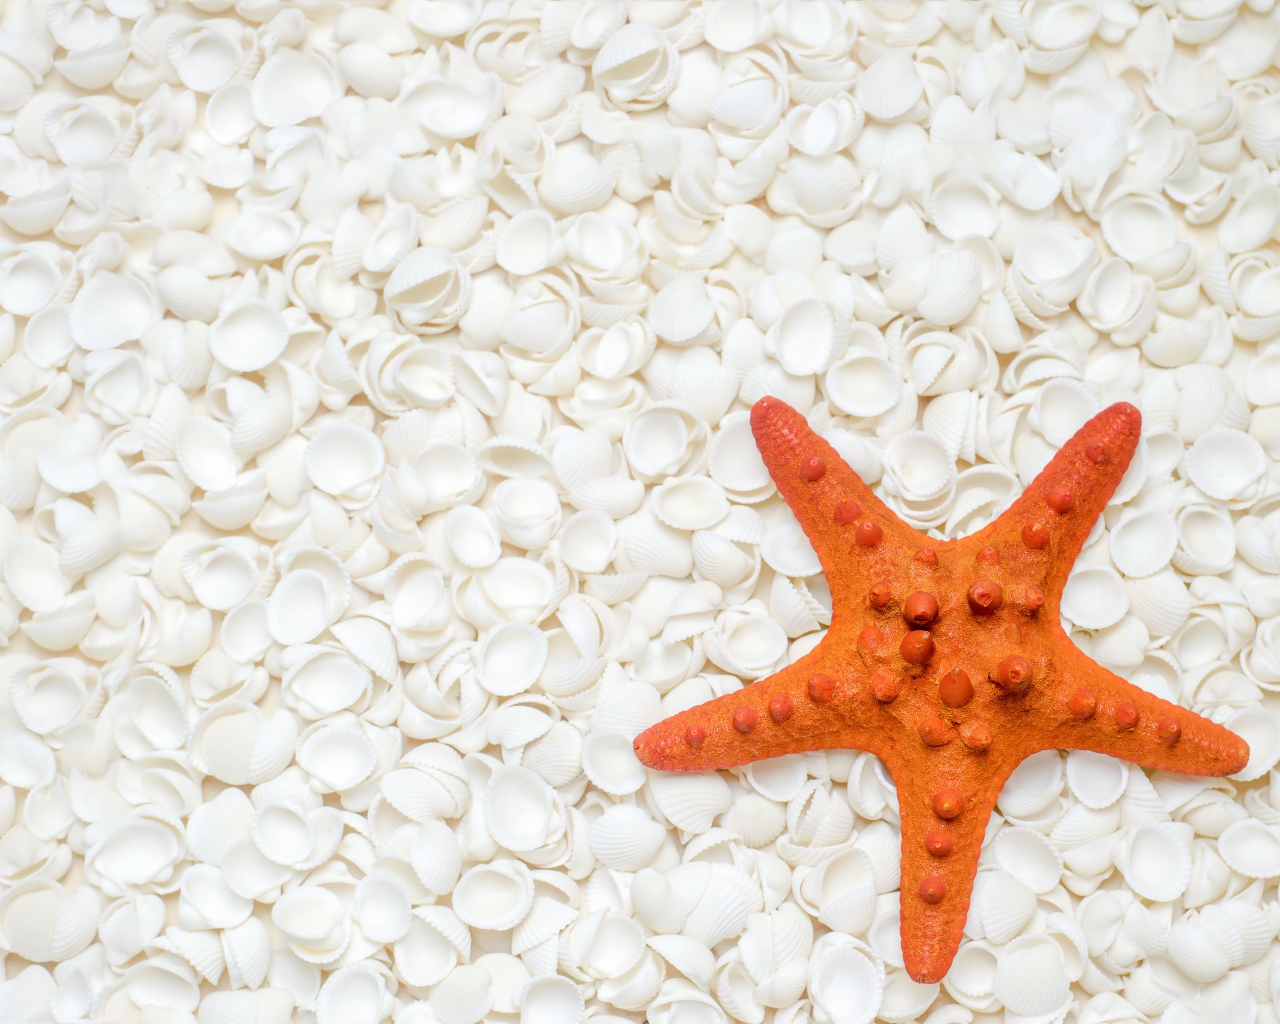 Оранжевая морская звезда лежит на белых ракушках 